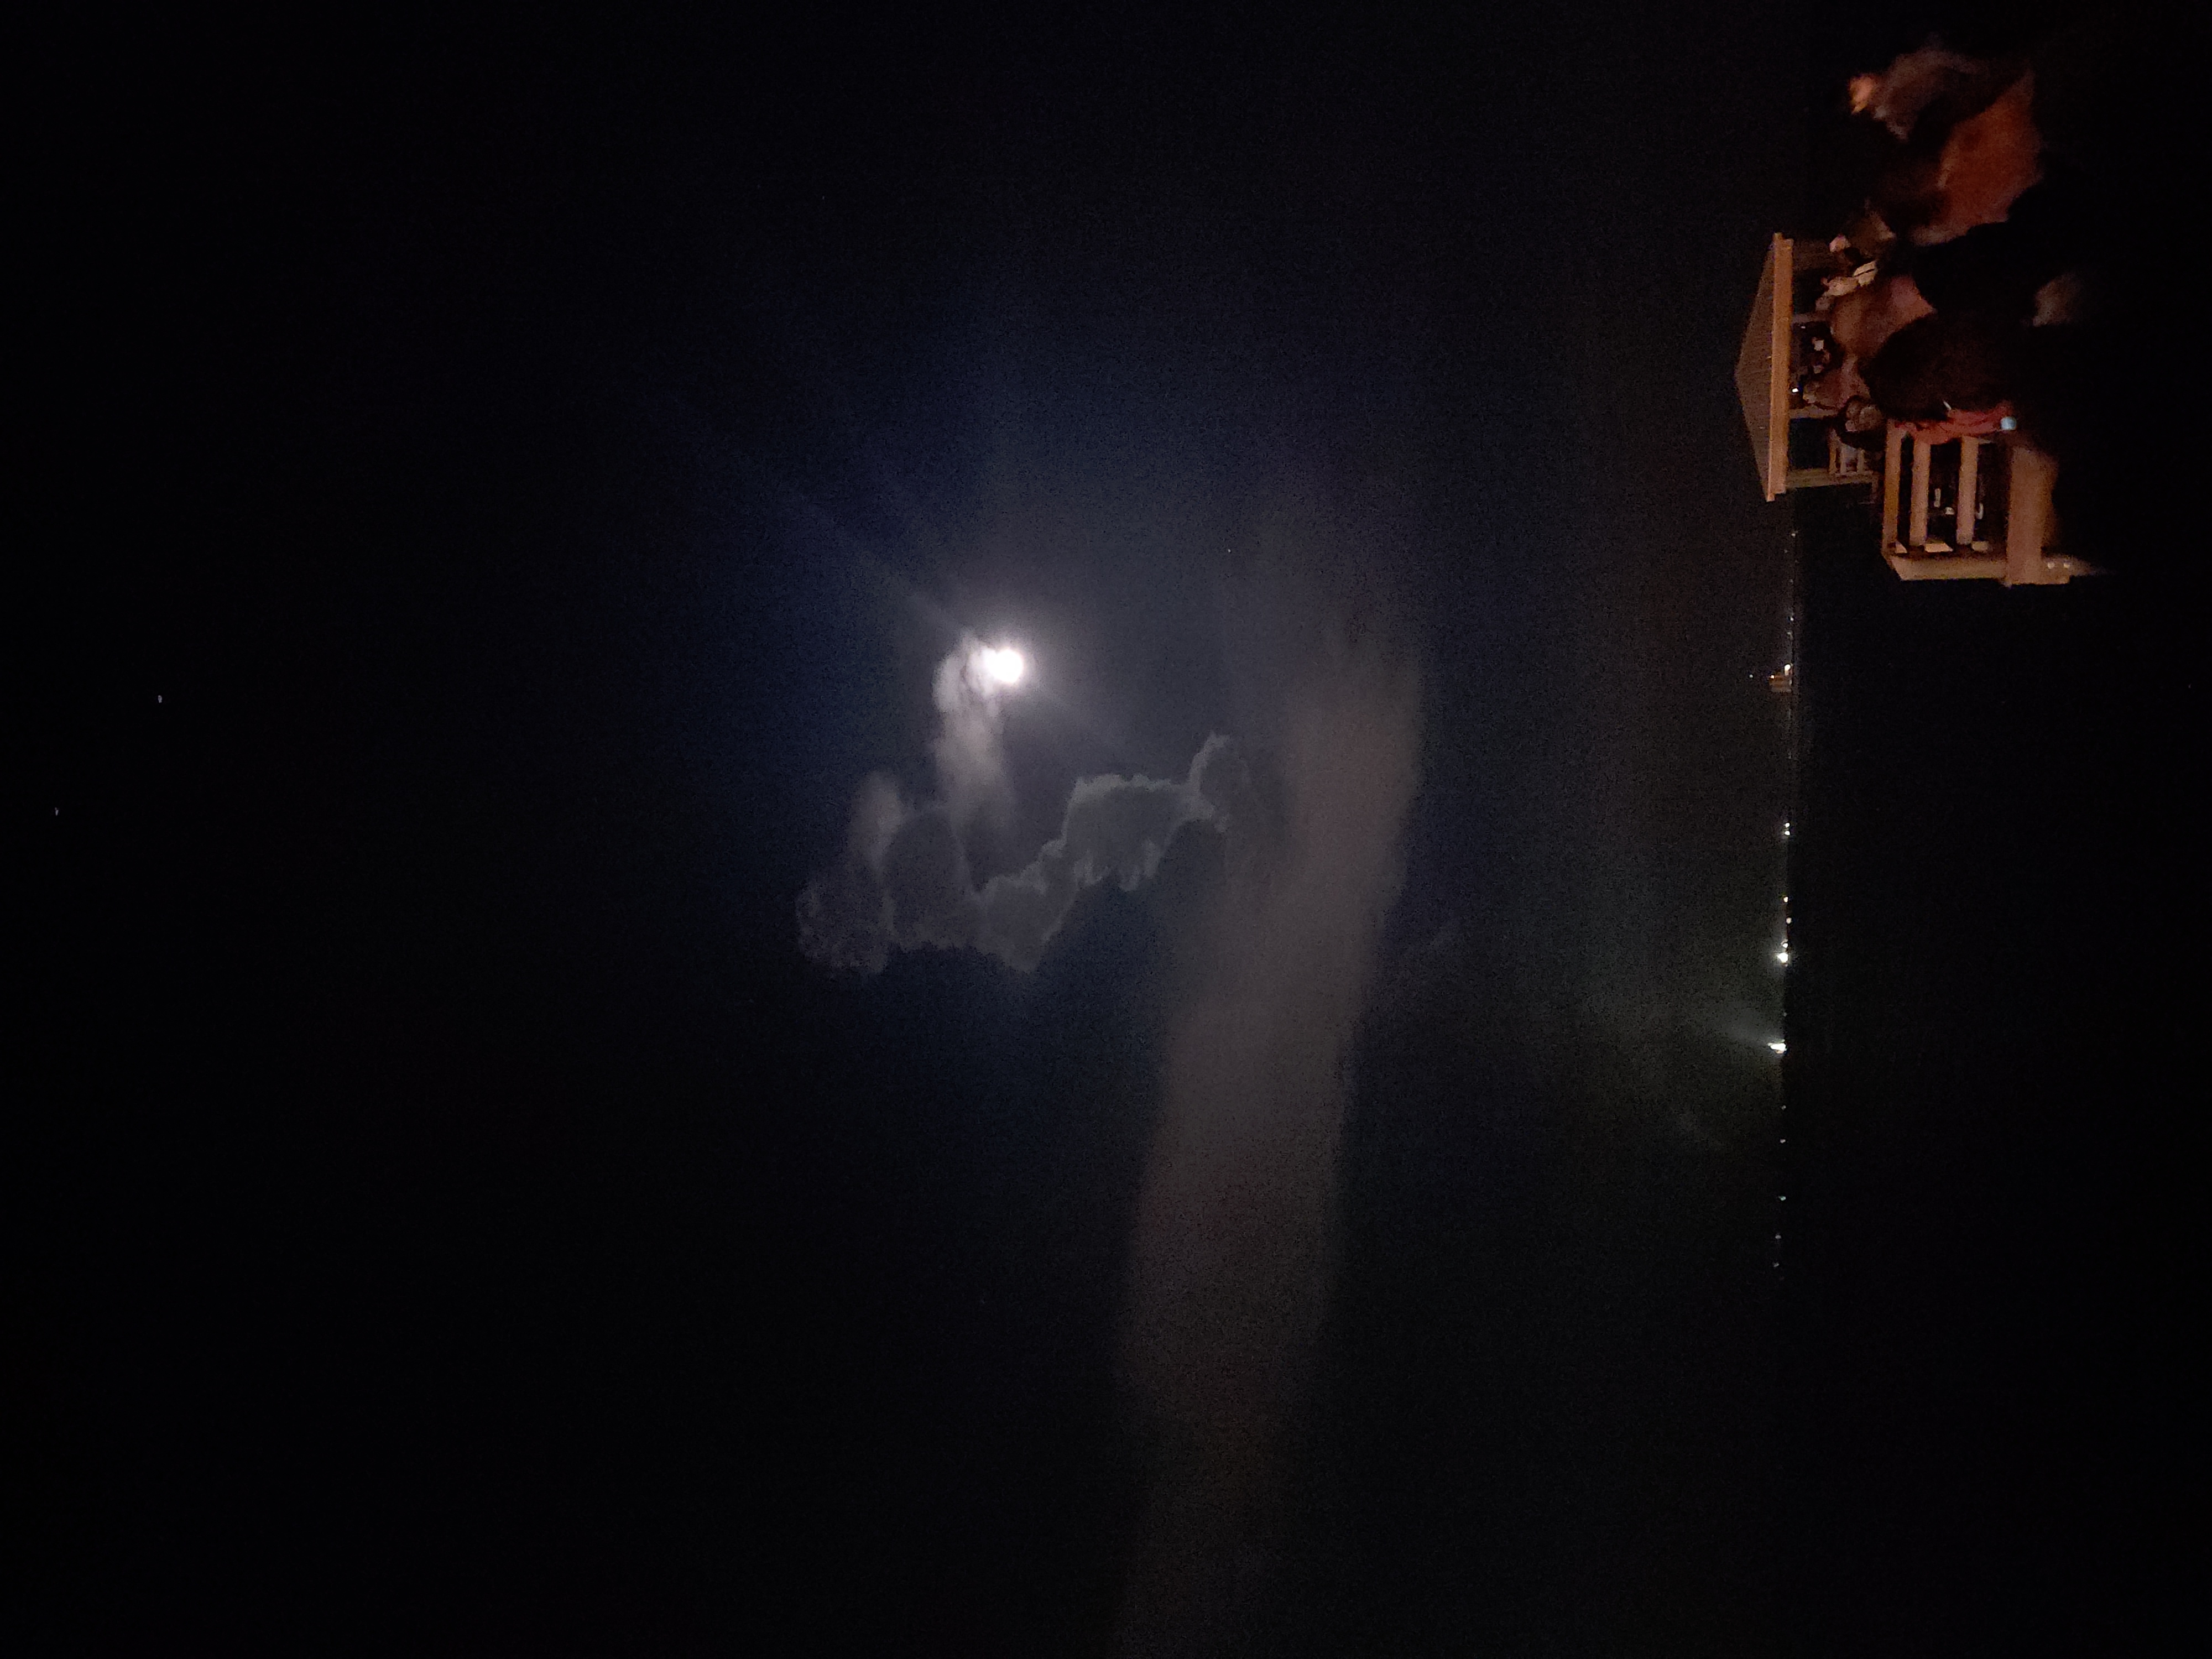 SLS rocket is a bright ball of light illuminating the dark night sky as it ascends.